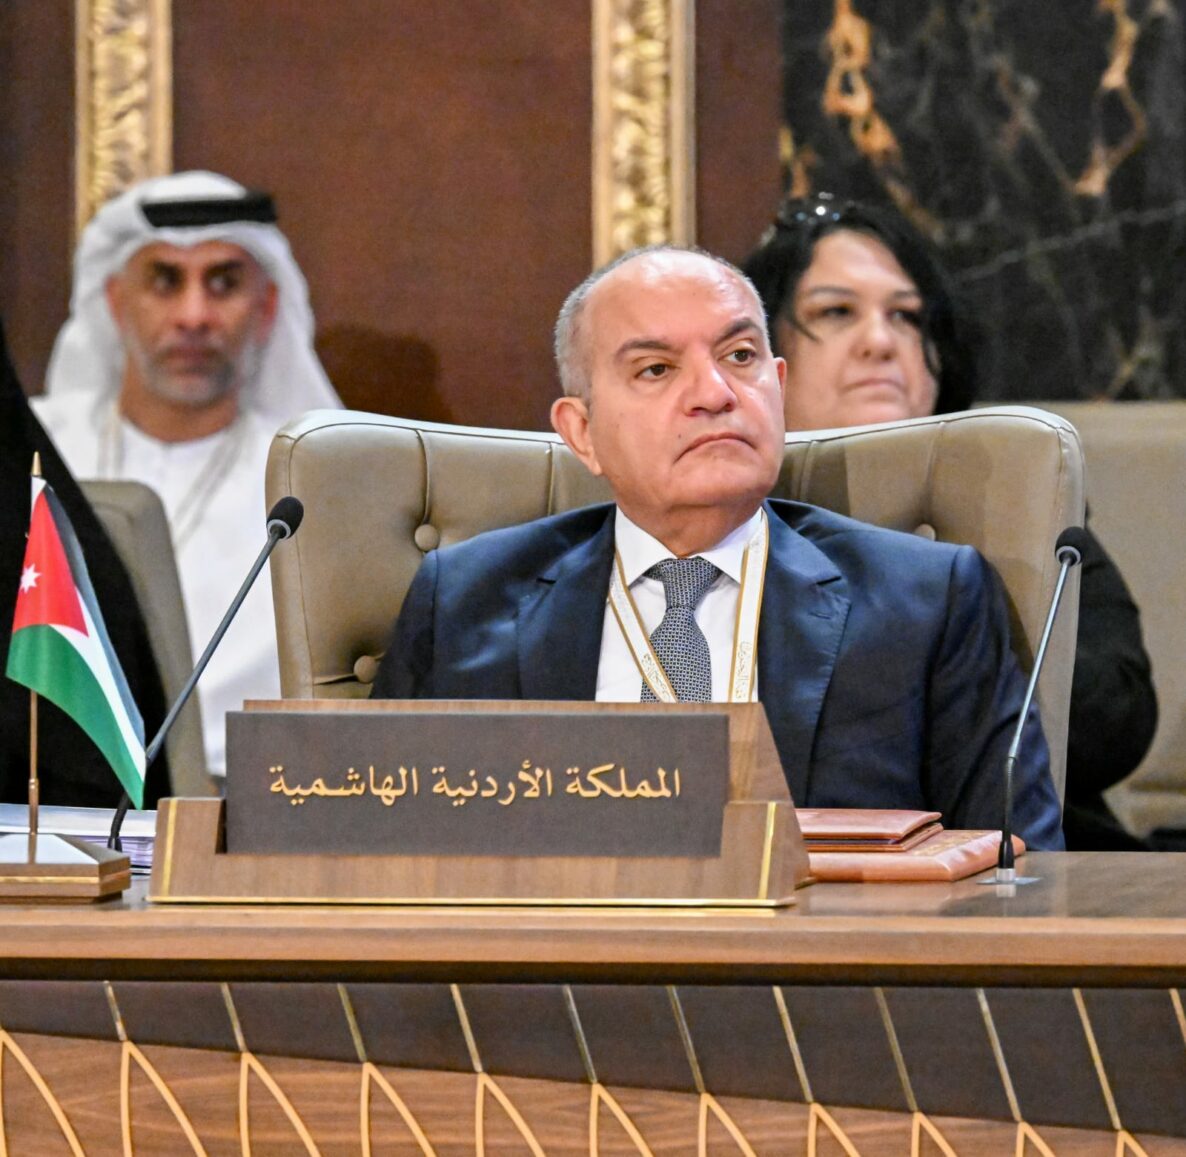 العضايلة يترأس الوفد الأردني للإعداد لاجتماع وزراء الخارجية للقمة العربية